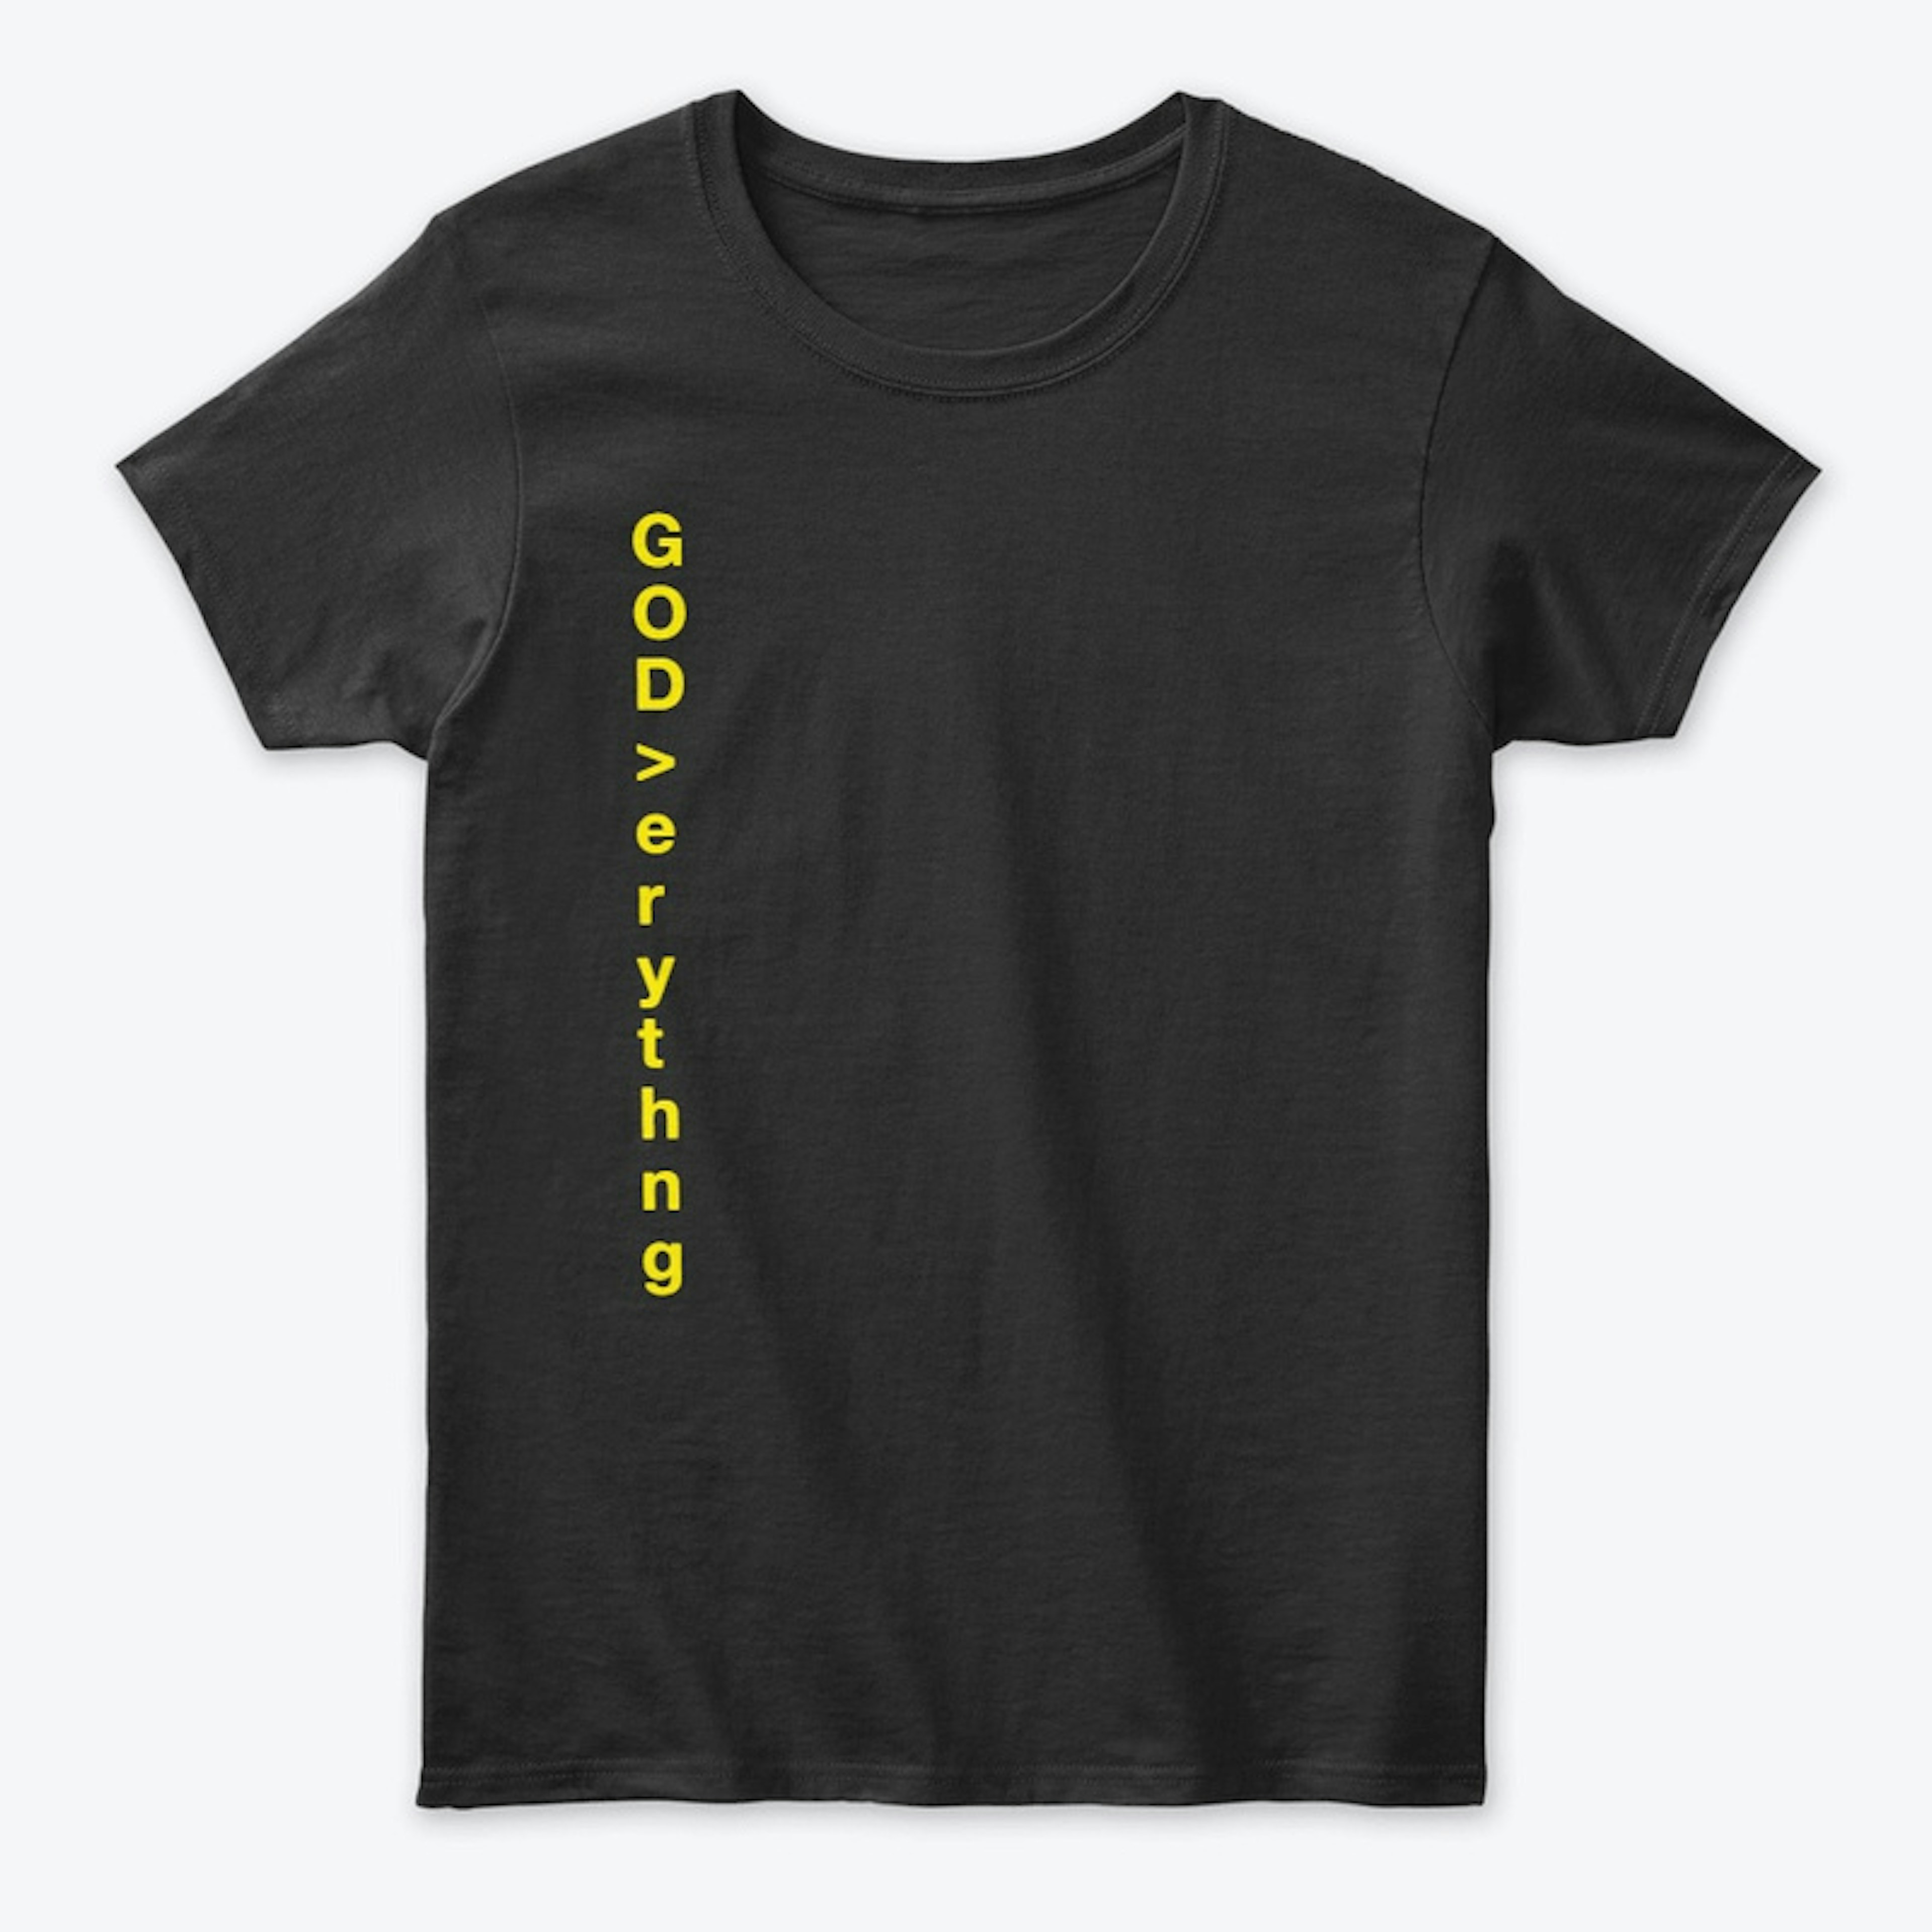 GOD over ERYTHNG T-Shirt